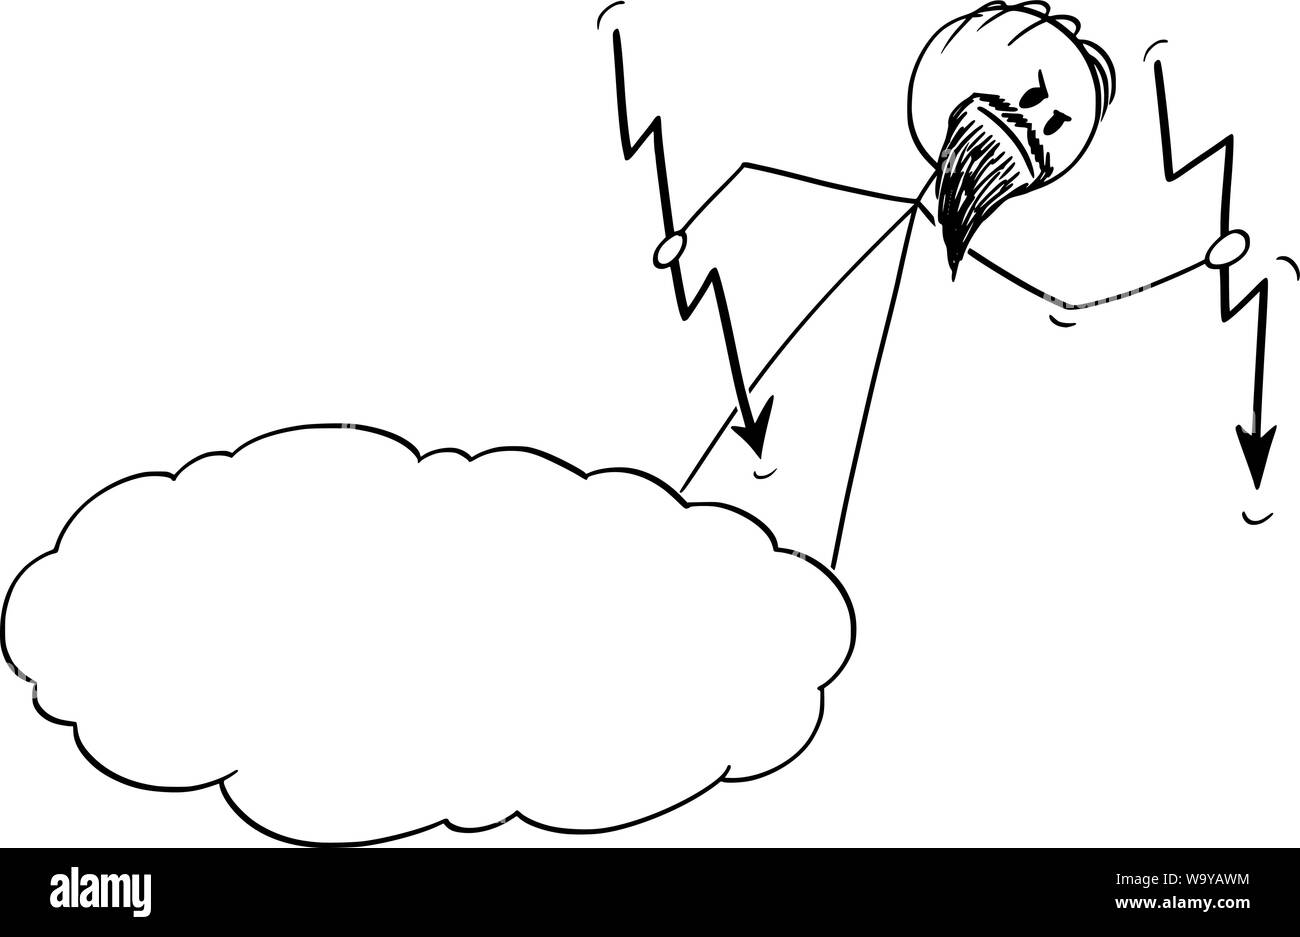 Vektor cartoon Strichmännchen Zeichnen konzeptionelle Darstellung der zornigen Gottes Casting oder werfen die Blitze vom Himmel oder Cloud. Stock Vektor